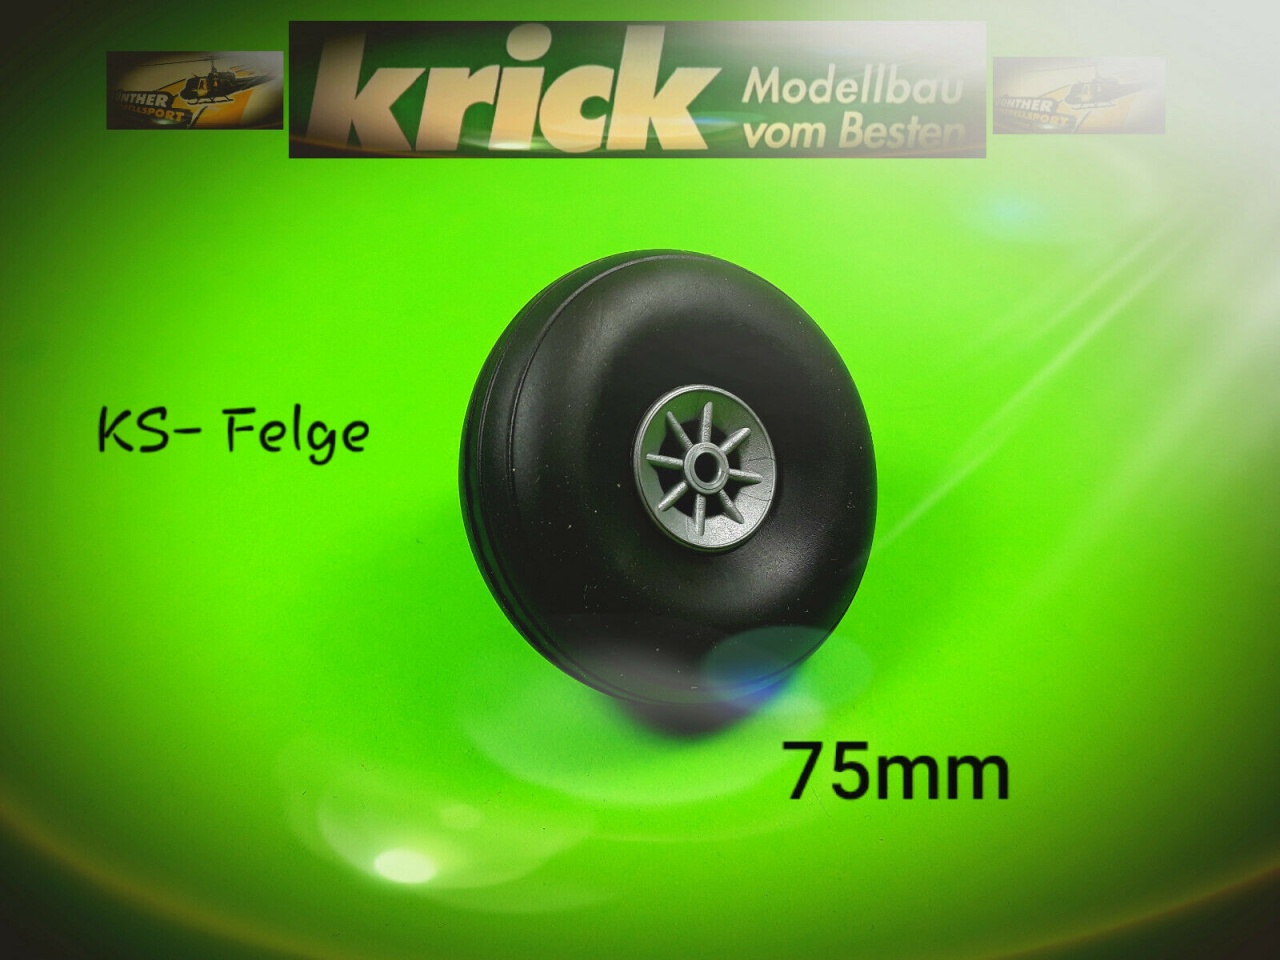 Krick Flugmodellrad 75mm KS-Felge, 71175